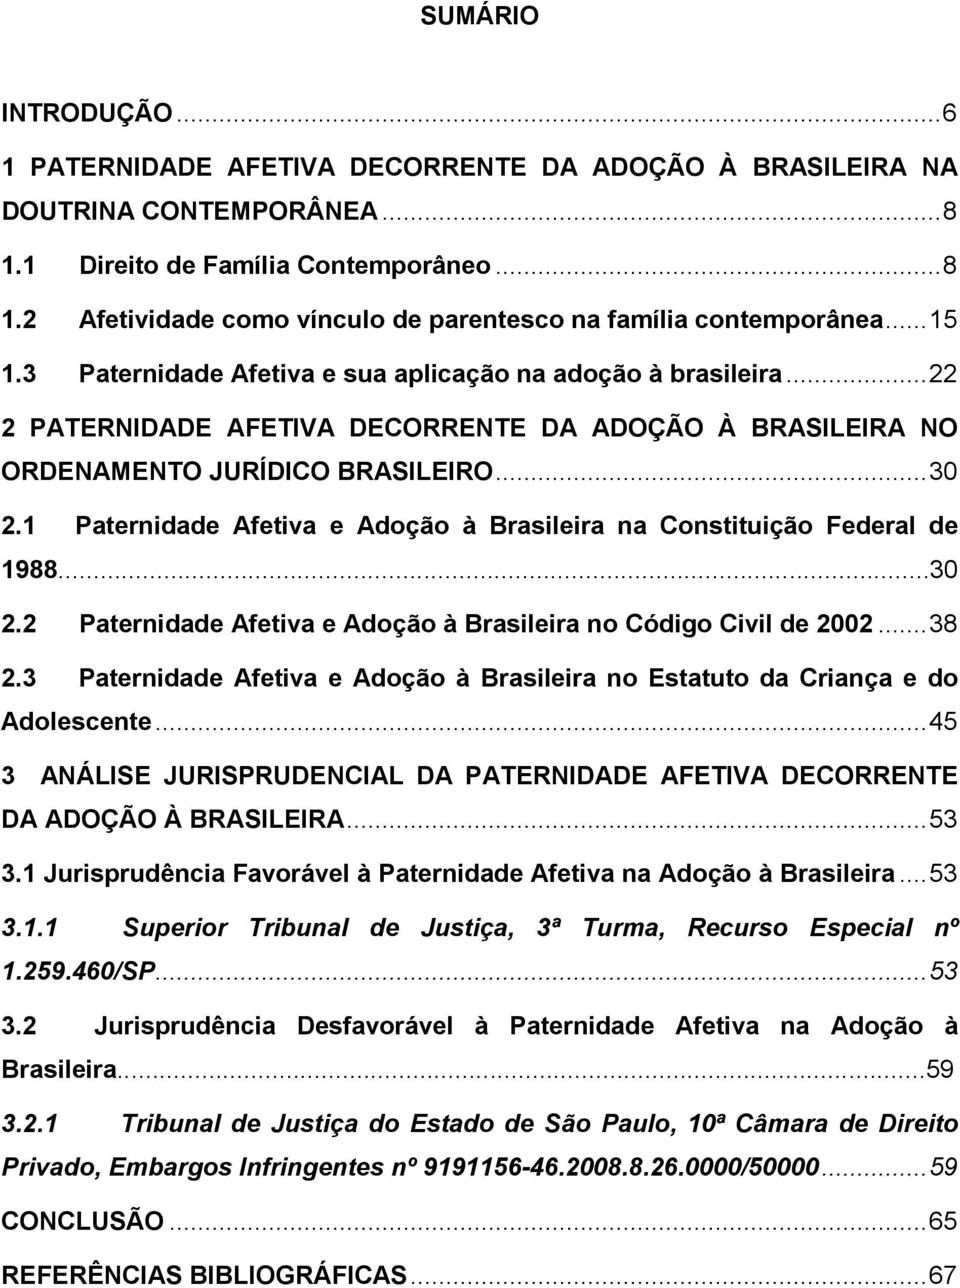 1 Paternidade Afetiva e Adoção à Brasileira na Constituição Federal de 1988...30 2.2 Paternidade Afetiva e Adoção à Brasileira no Código Civil de 2002... 38 2.